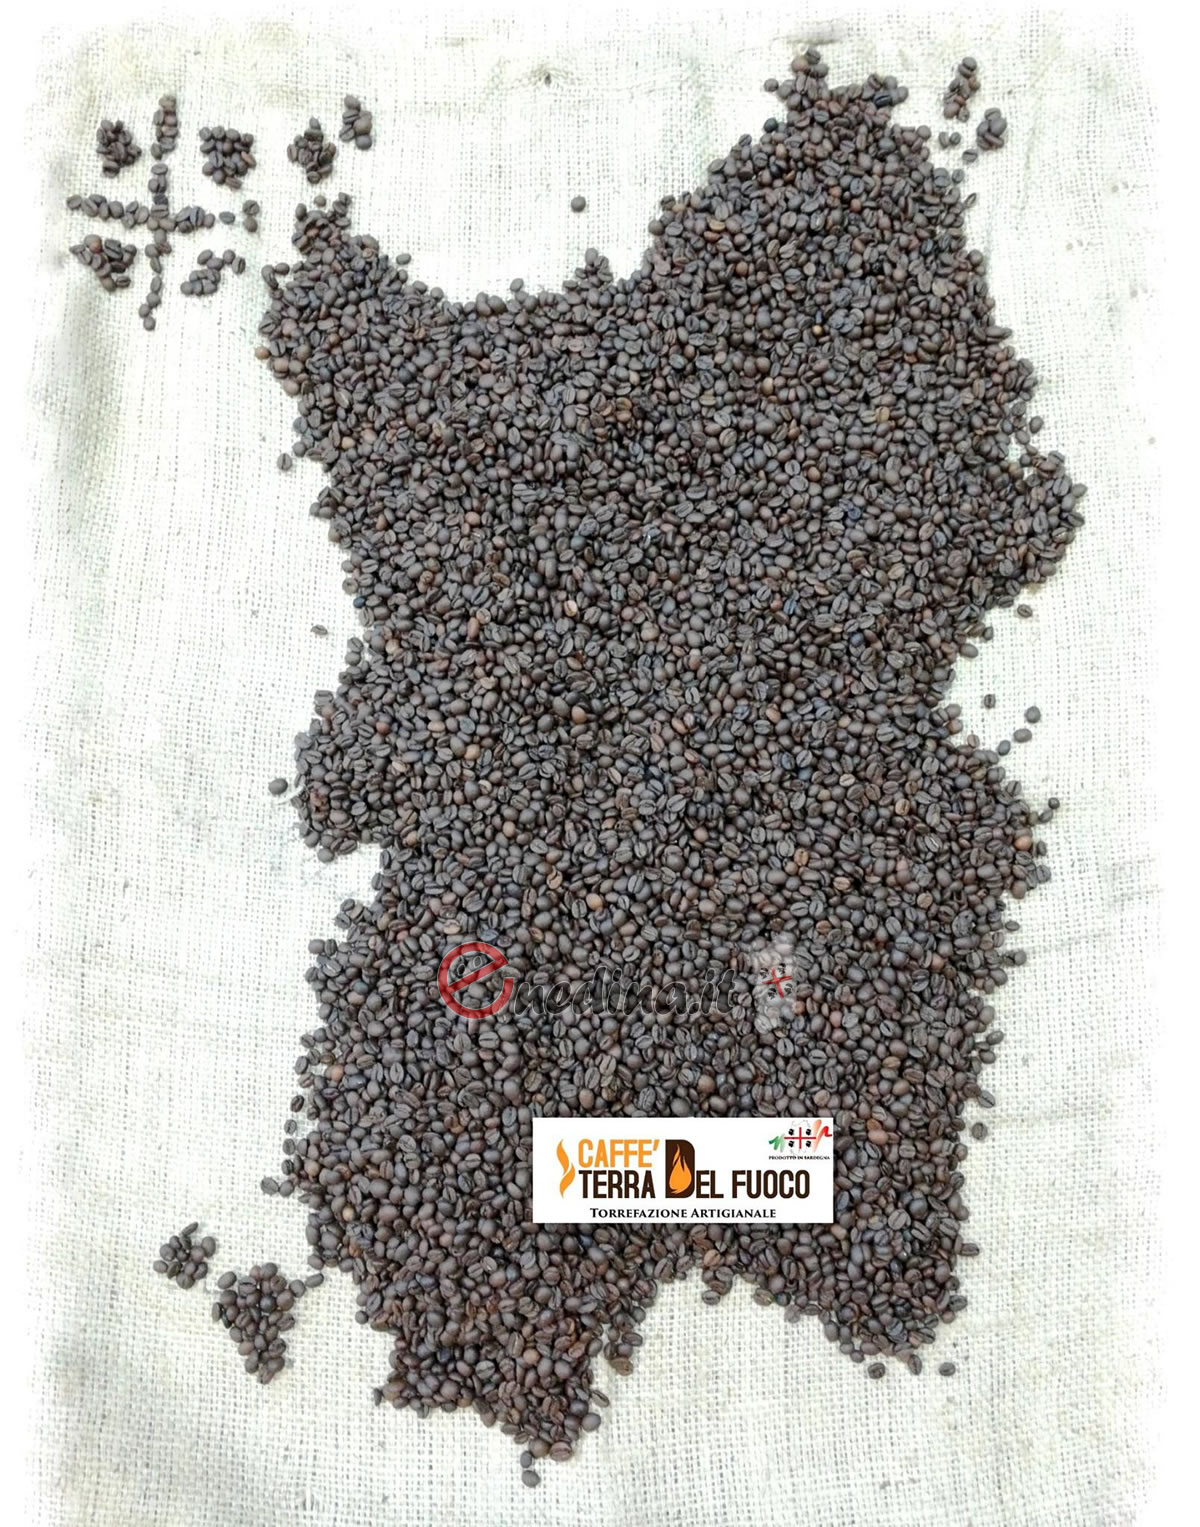 Caffè Terra del Fuoco, il caffè della terra dei nuraghi